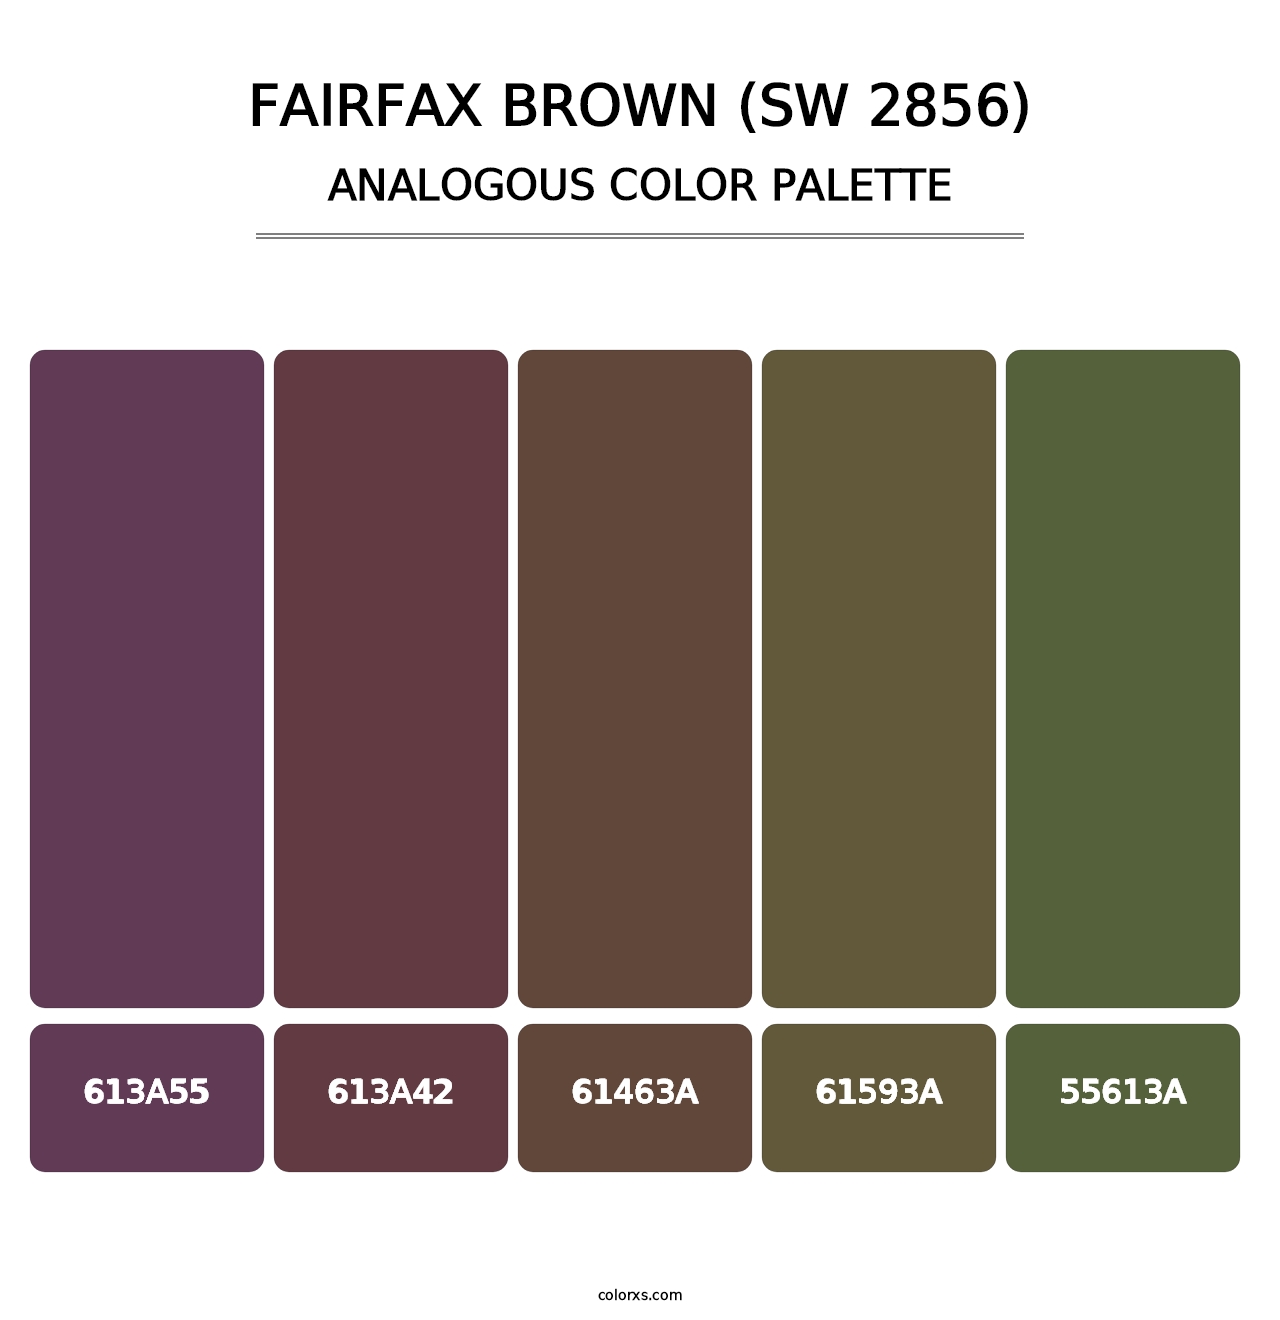 Fairfax Brown (SW 2856) - Analogous Color Palette